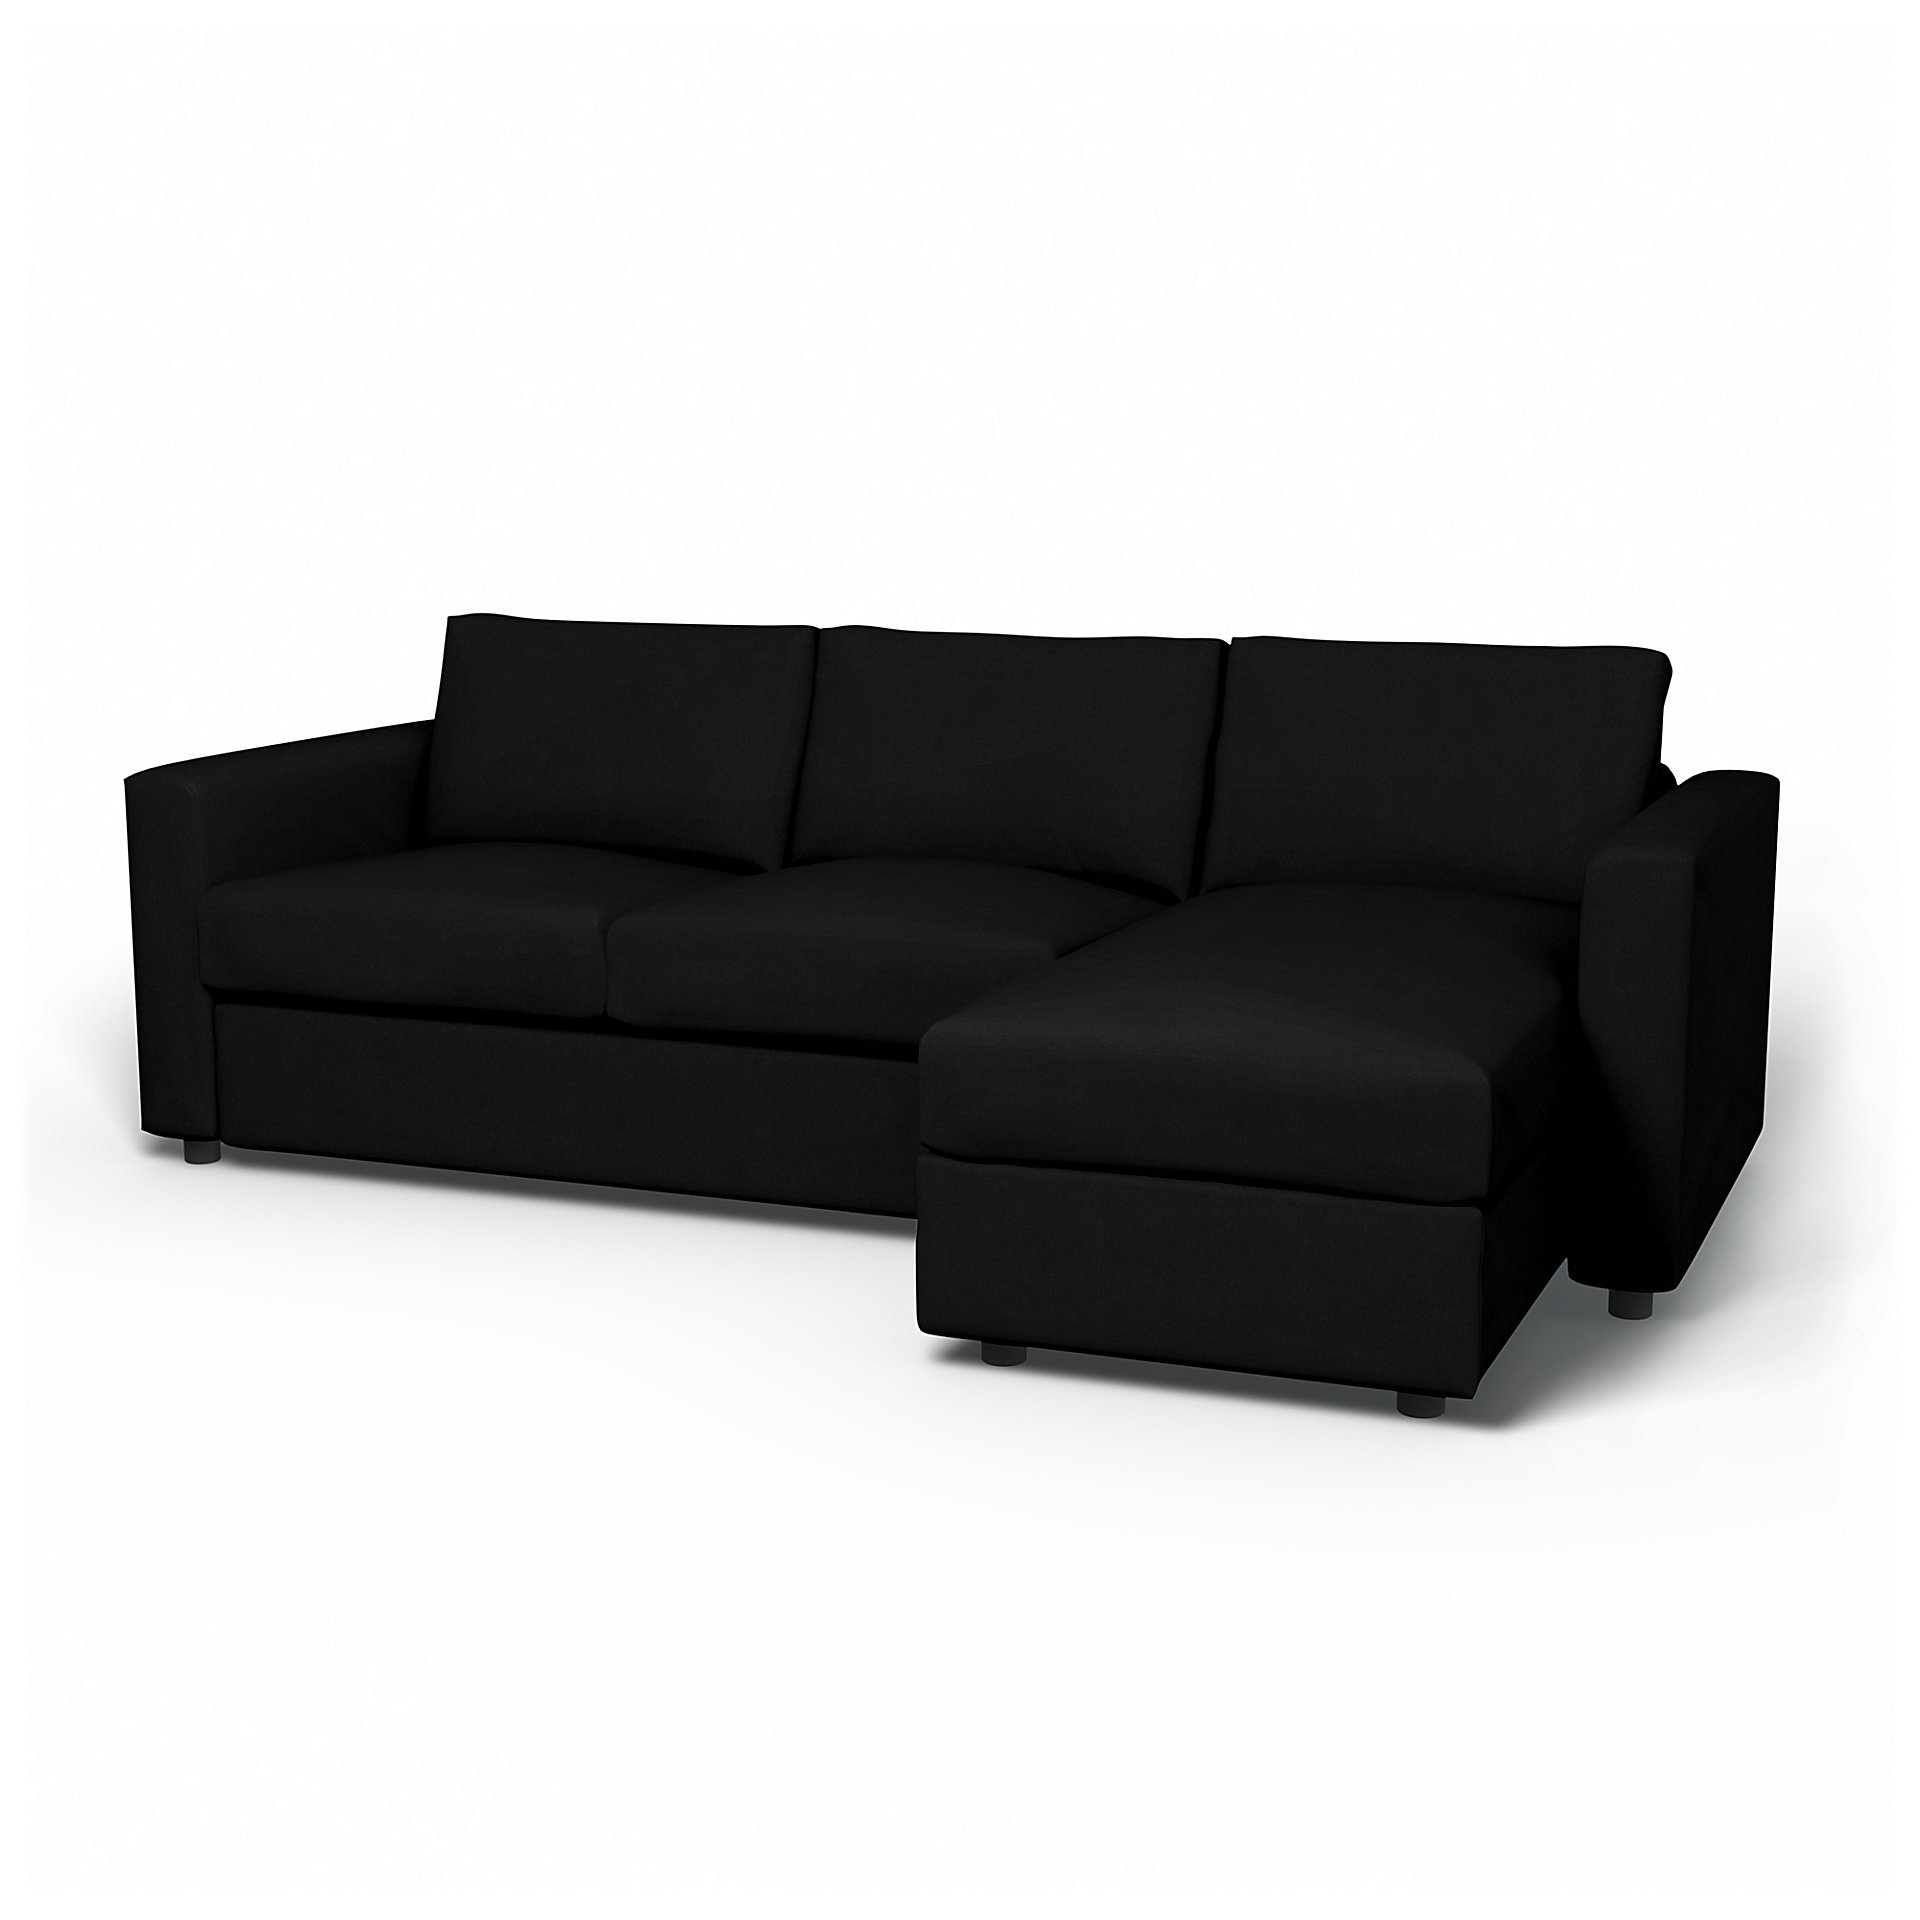 IKEA - Vimle 2 Seater Sofa with Chaise Cover, Black, Velvet - Bemz